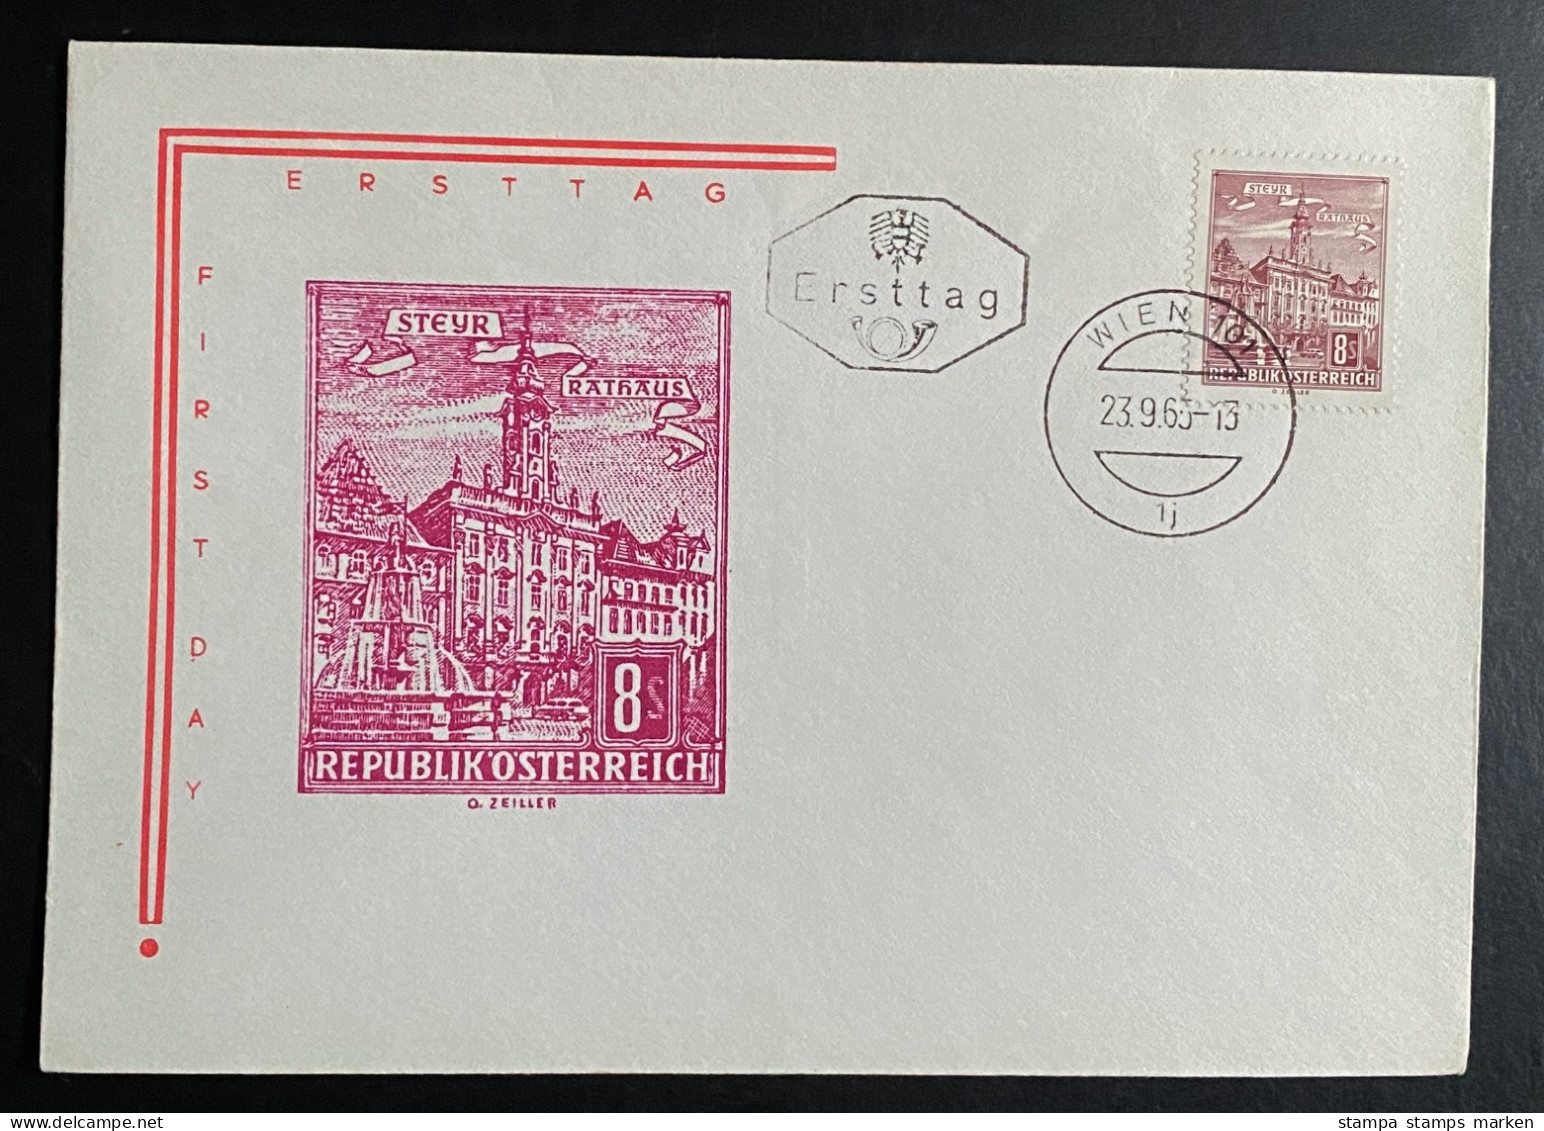 Österreich 1965 Bauten Mi. 1194 FDC Schmuckkuvert Gestempelt/o WIEN - Storia Postale